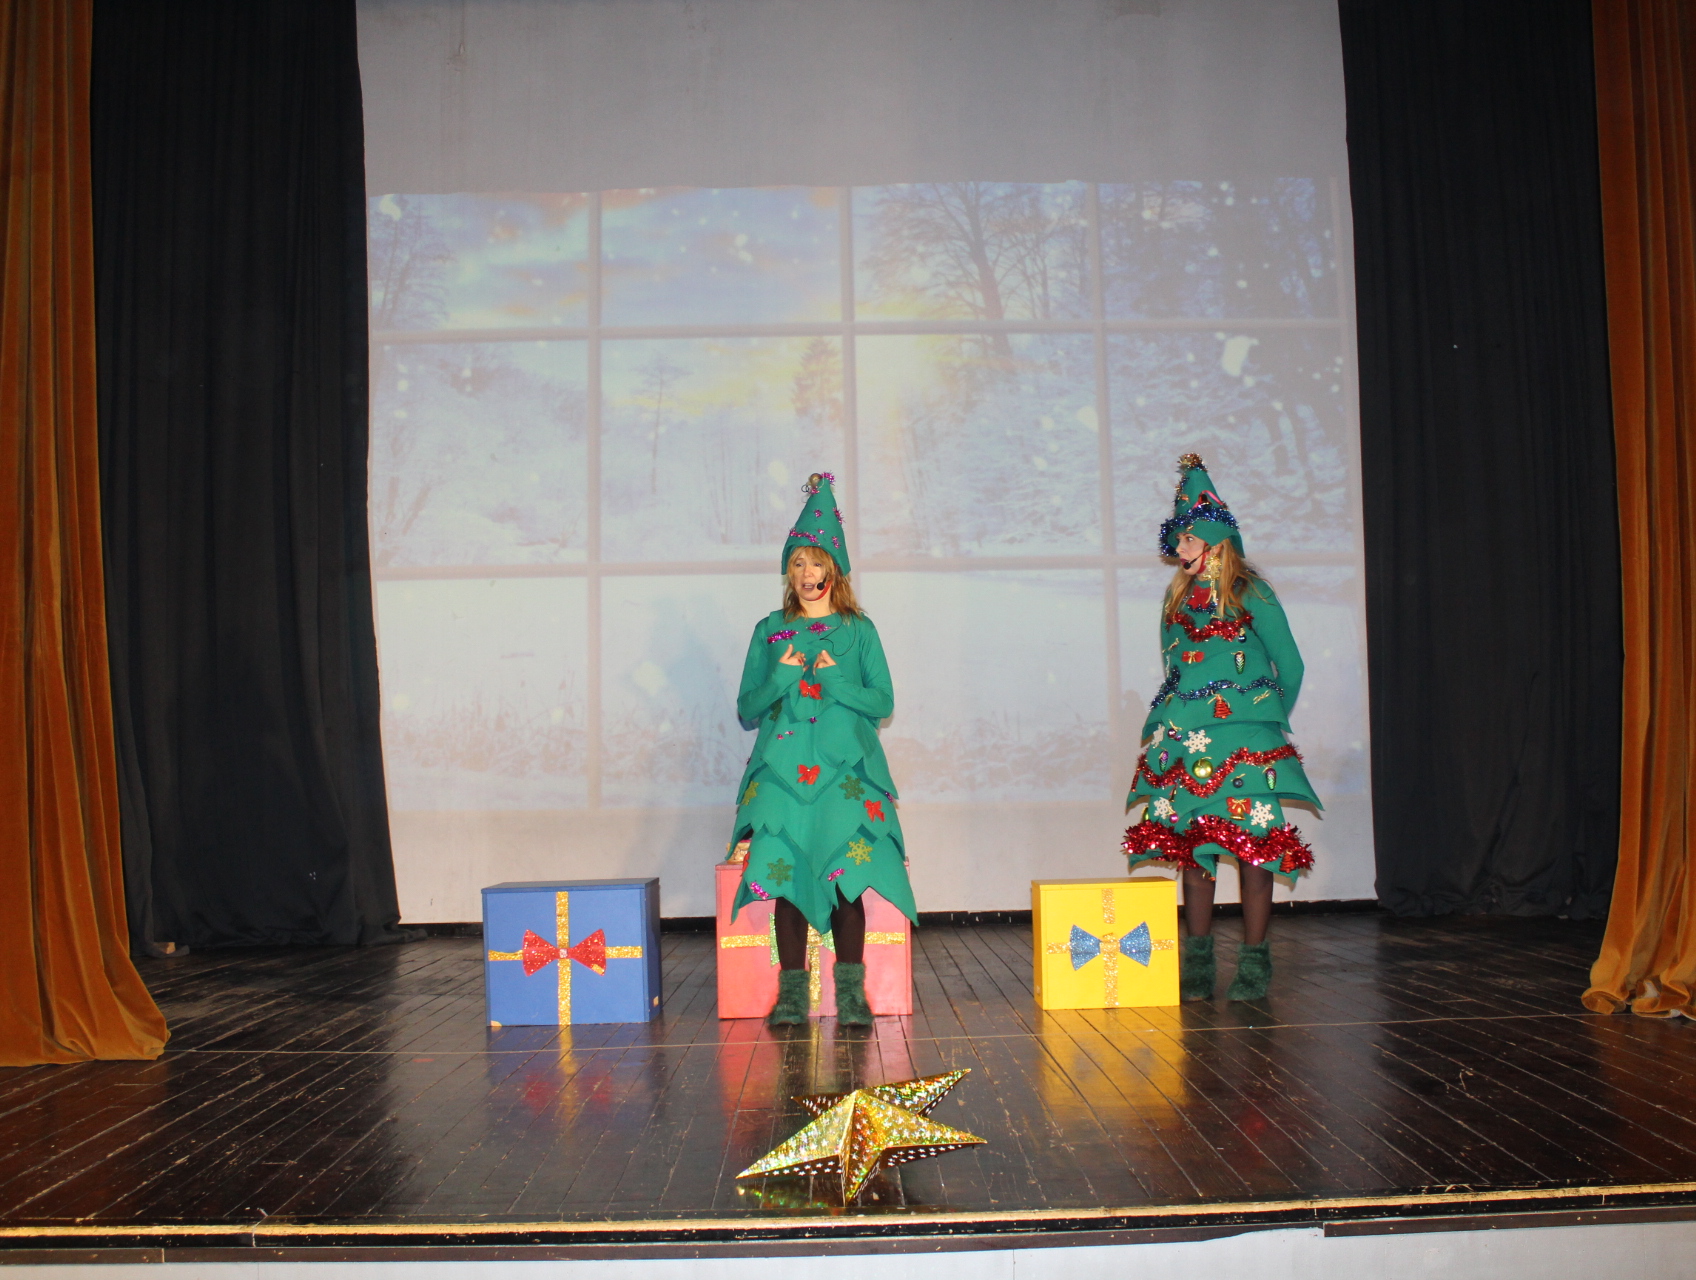 Plandište: Pozorišna predstava “Dve novogodišnje jelke“ okupila veliki broj mališana